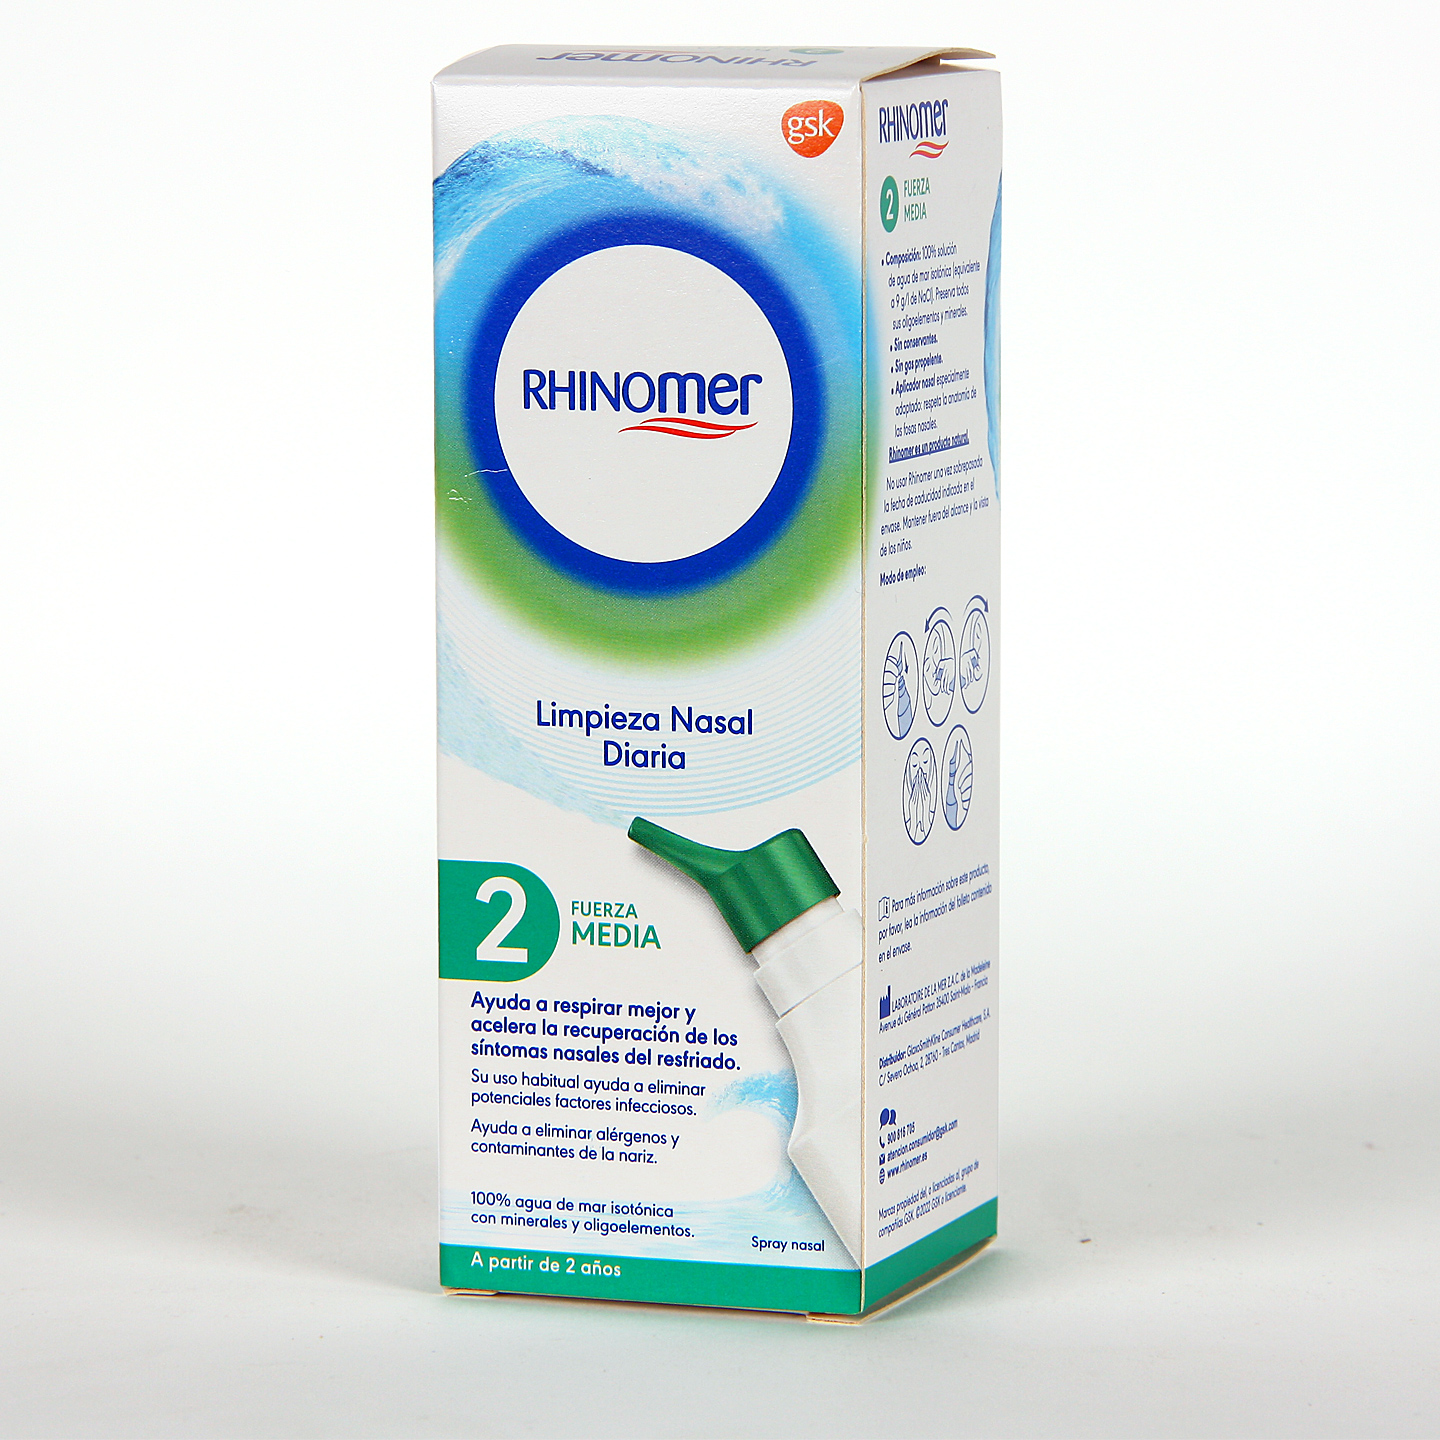 https://farmaciajimenez.com/storage/products/rhinomer-fuerza-2-media-33-gratis/rhinomer-fuerza-2.jpg